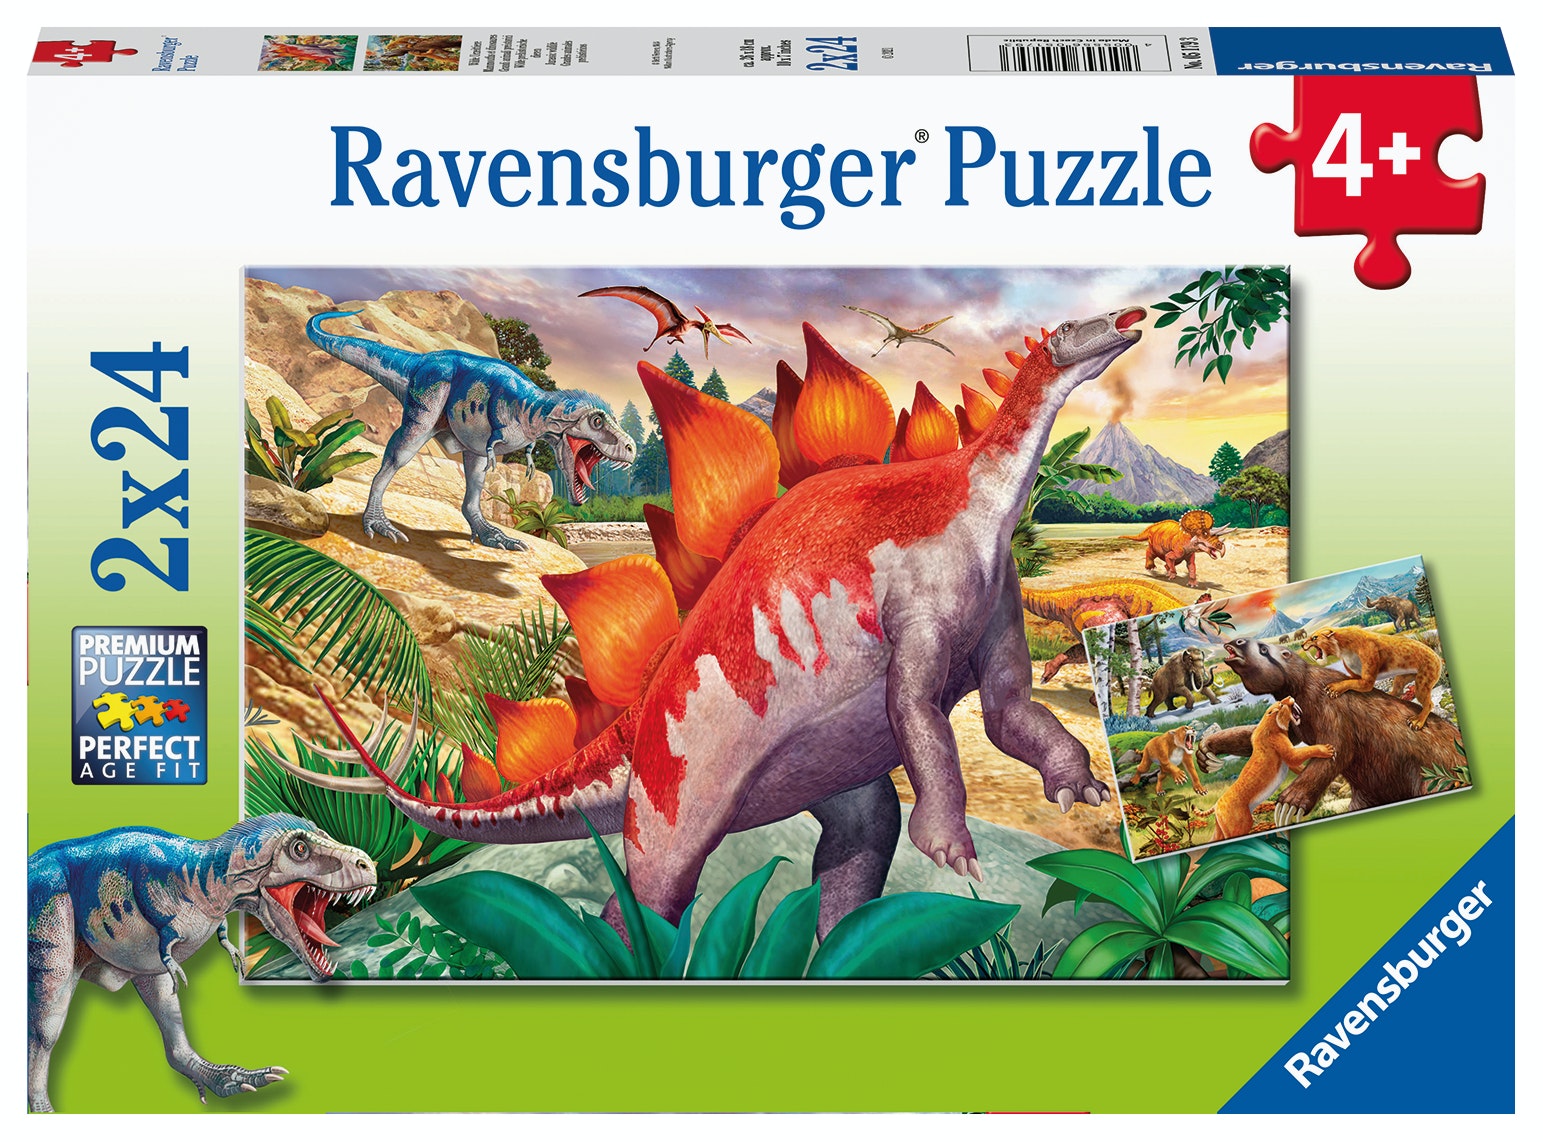 Ravensburger puzzel 2x24 stukjes wilde oertijddieren